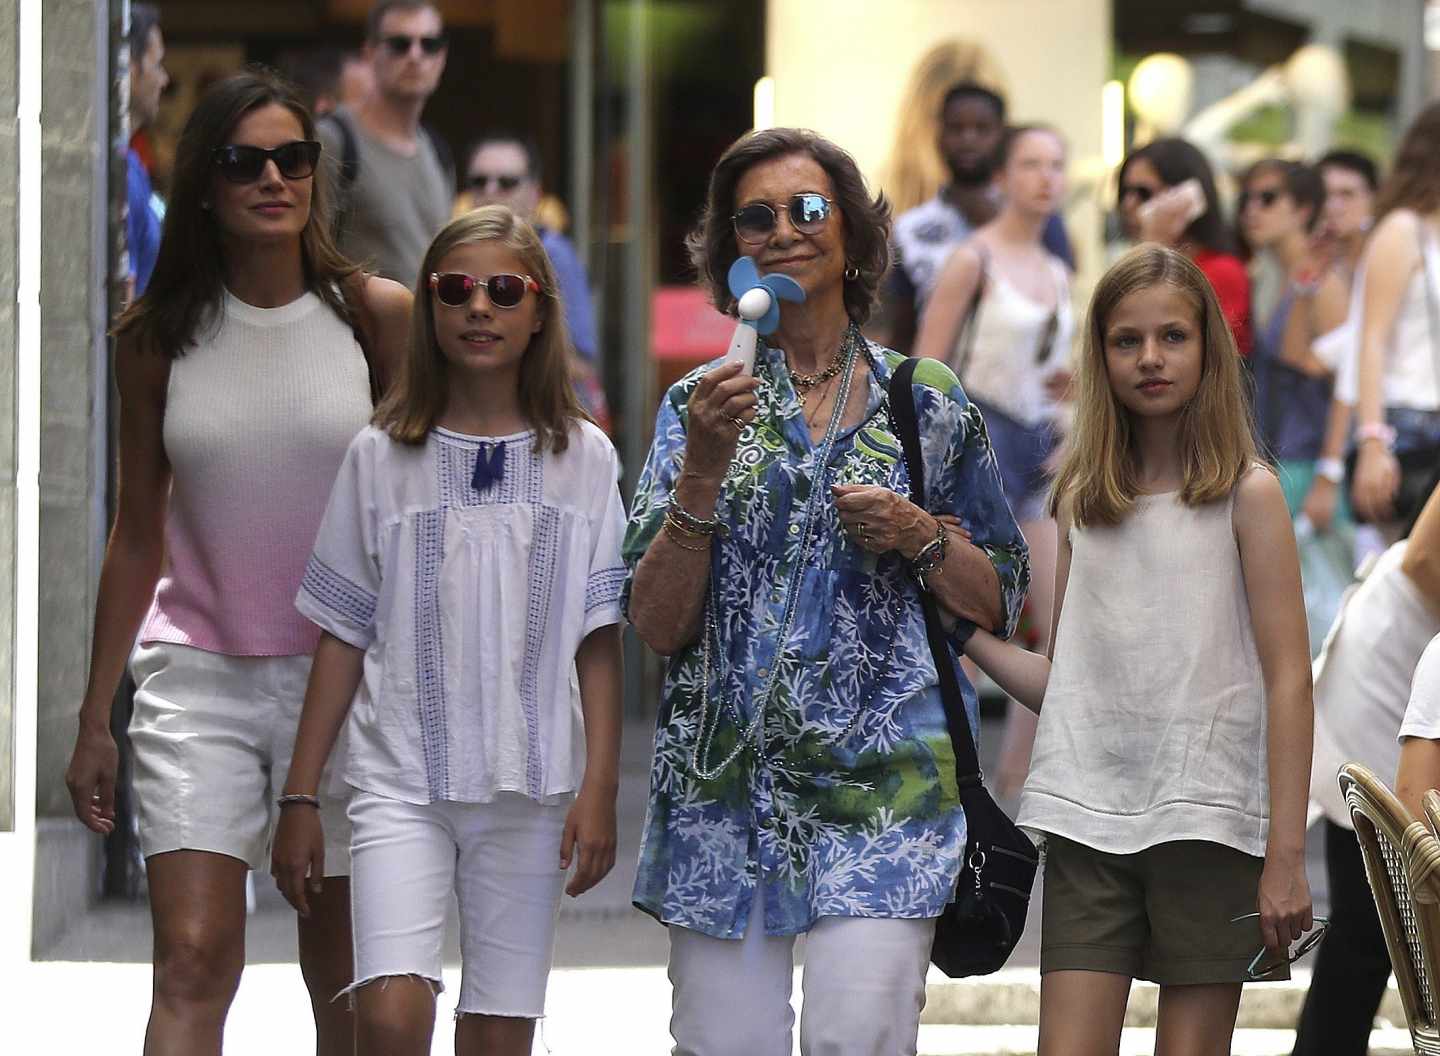 La reina Letizia, acompañada de sus hijas, la princesa Leonor y la infanta Sofía, junto a la reina Sofía, en el Mercado del Olivar de Palma de Mallorca, ciudad donde la familia real pasa sus vacaciones de verano.